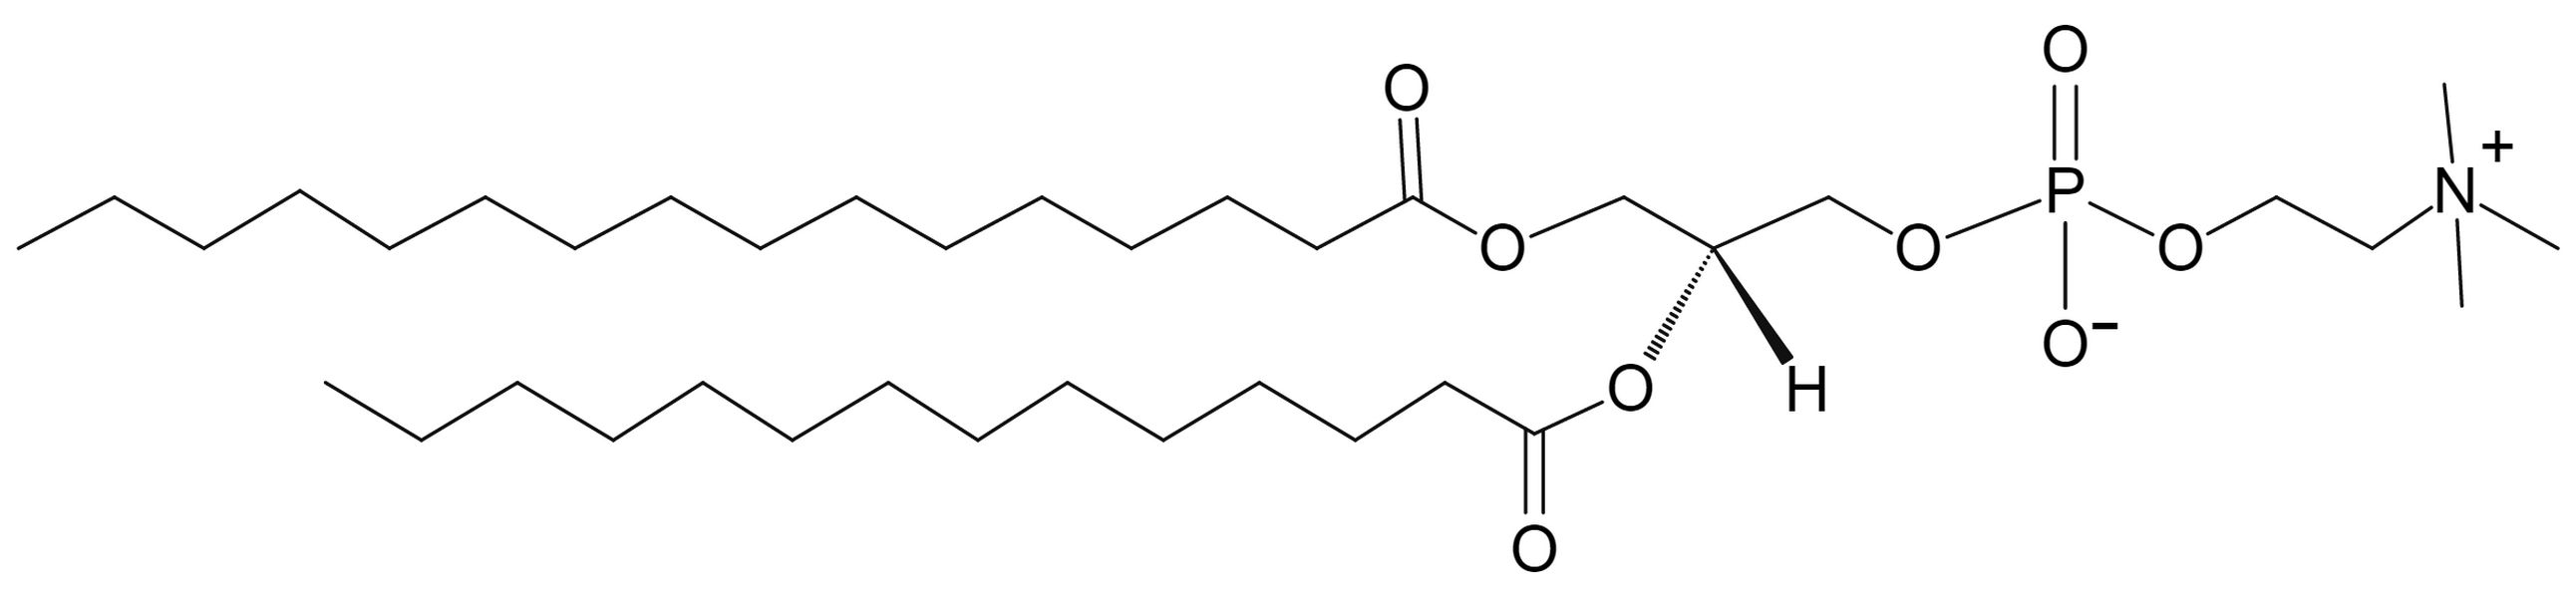 1-Palmitoyl-2-myristoyl-sn-glycero-3-phosphocholine